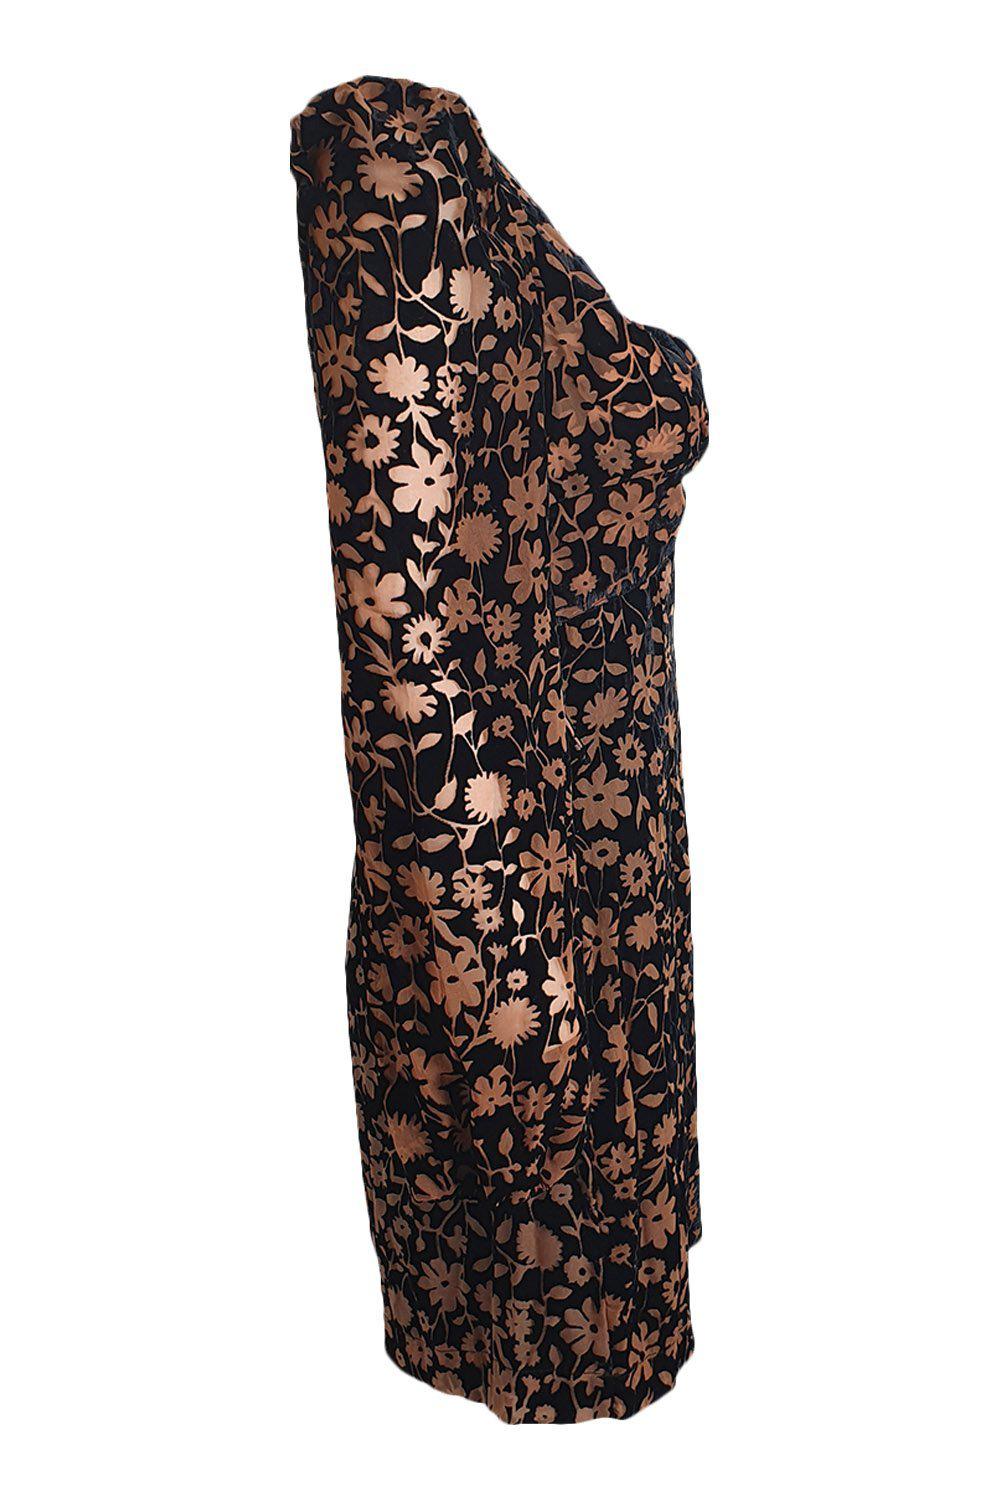 SAYLOR Noah Brown Black Velvet Long Sleeved Mini Dress (S)-Saylor-The Freperie